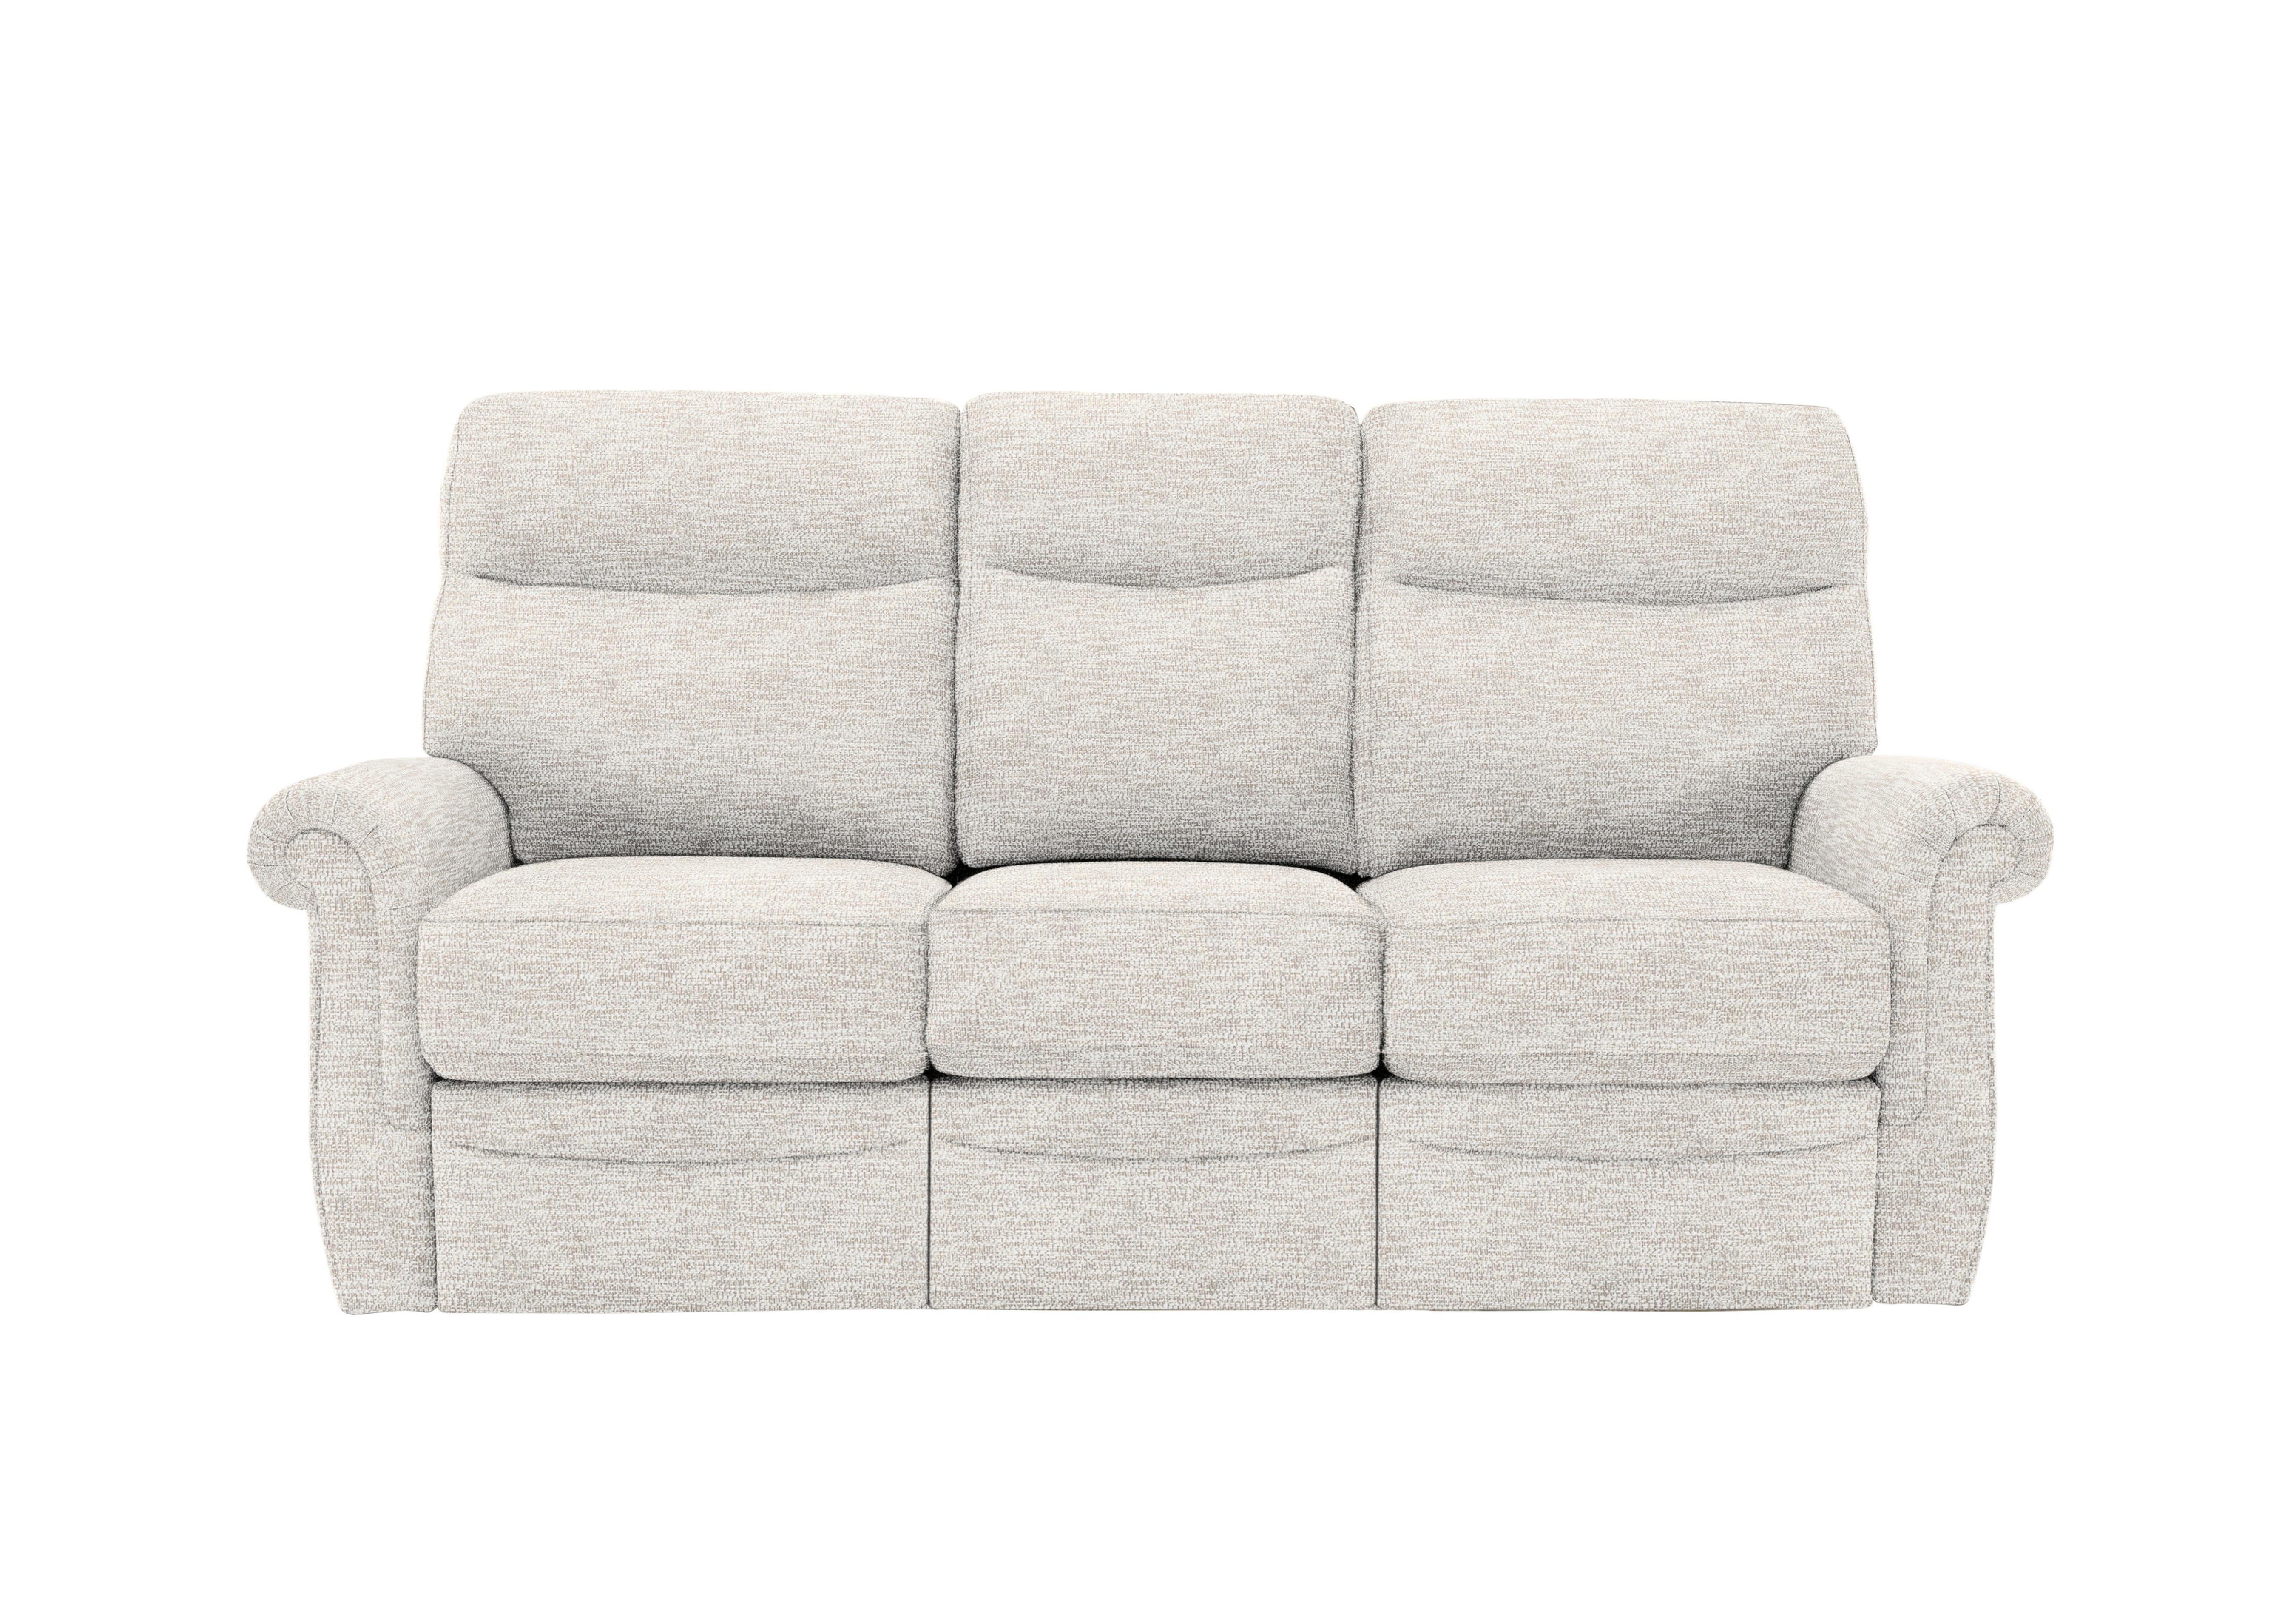 Avon 3 Seater Fabric Sofa in C931 Rush Cream on Furniture Village